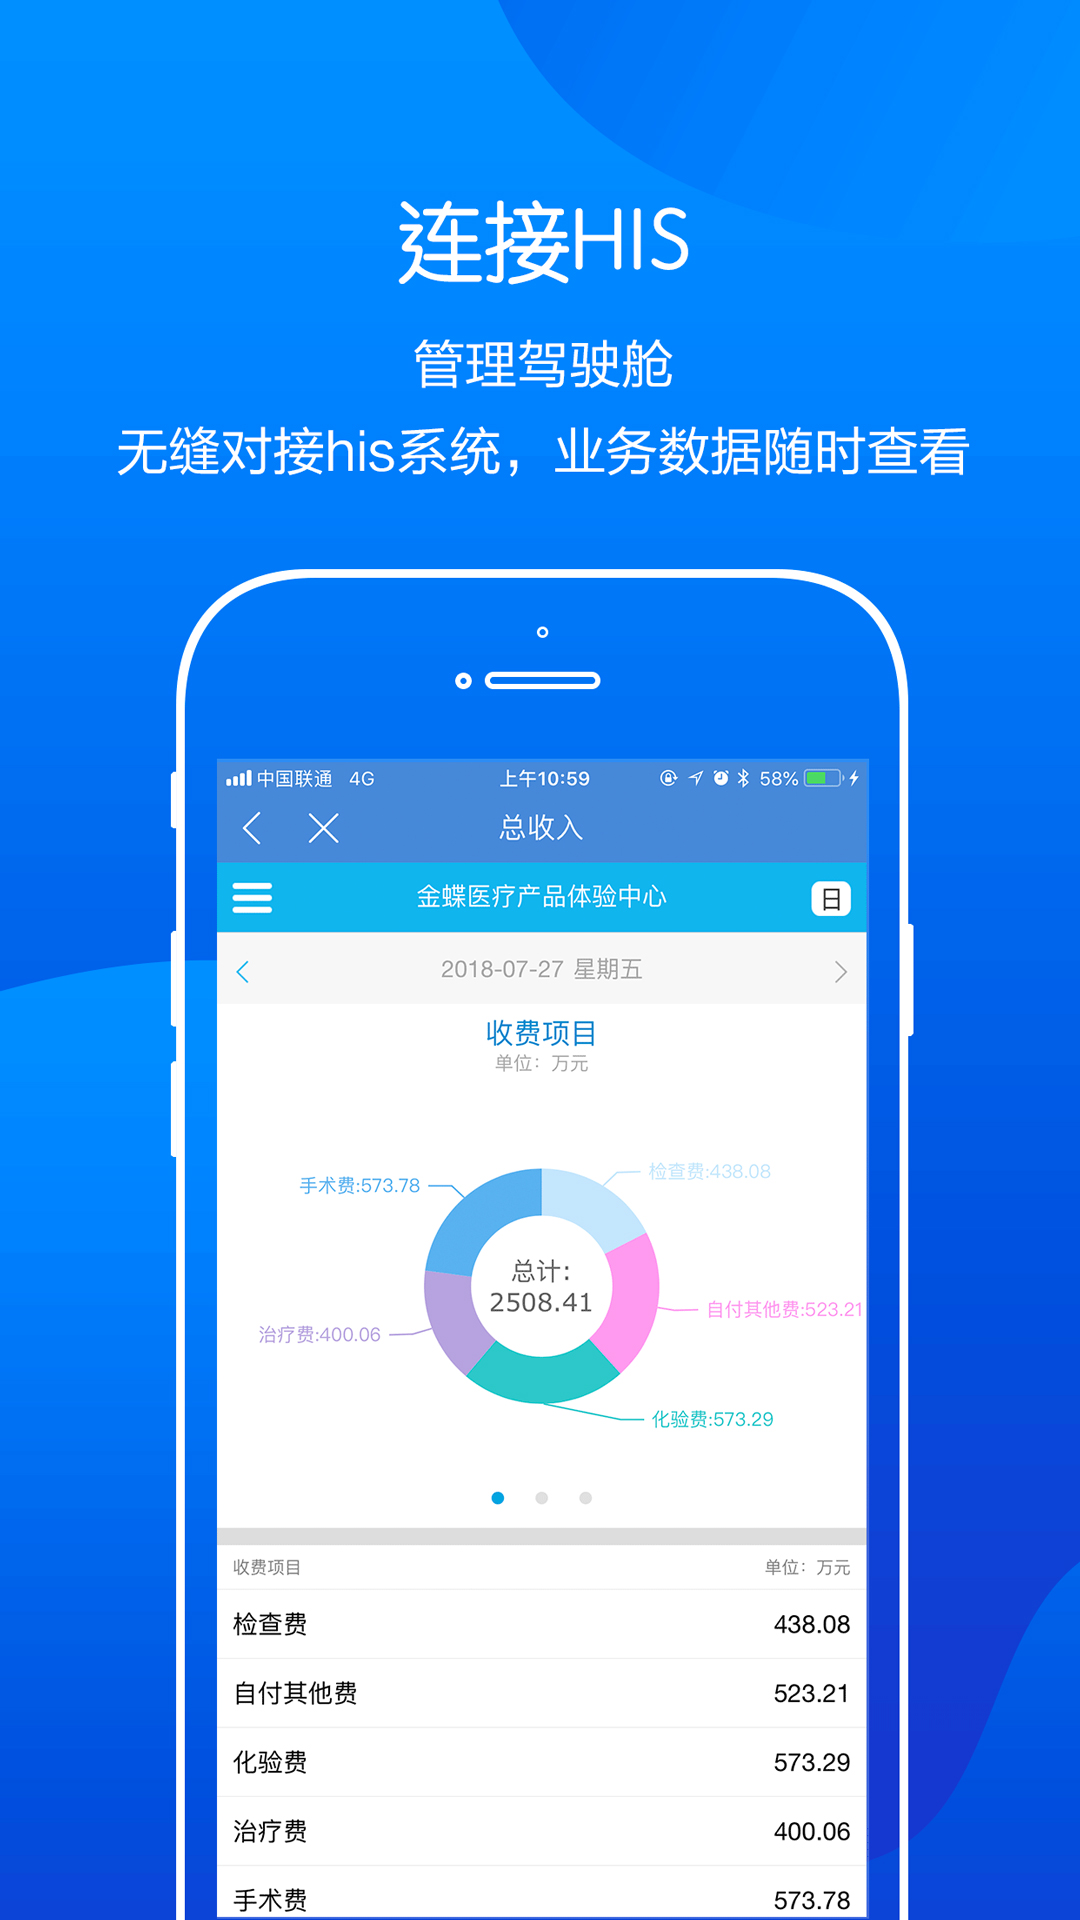 金蝶云医院app